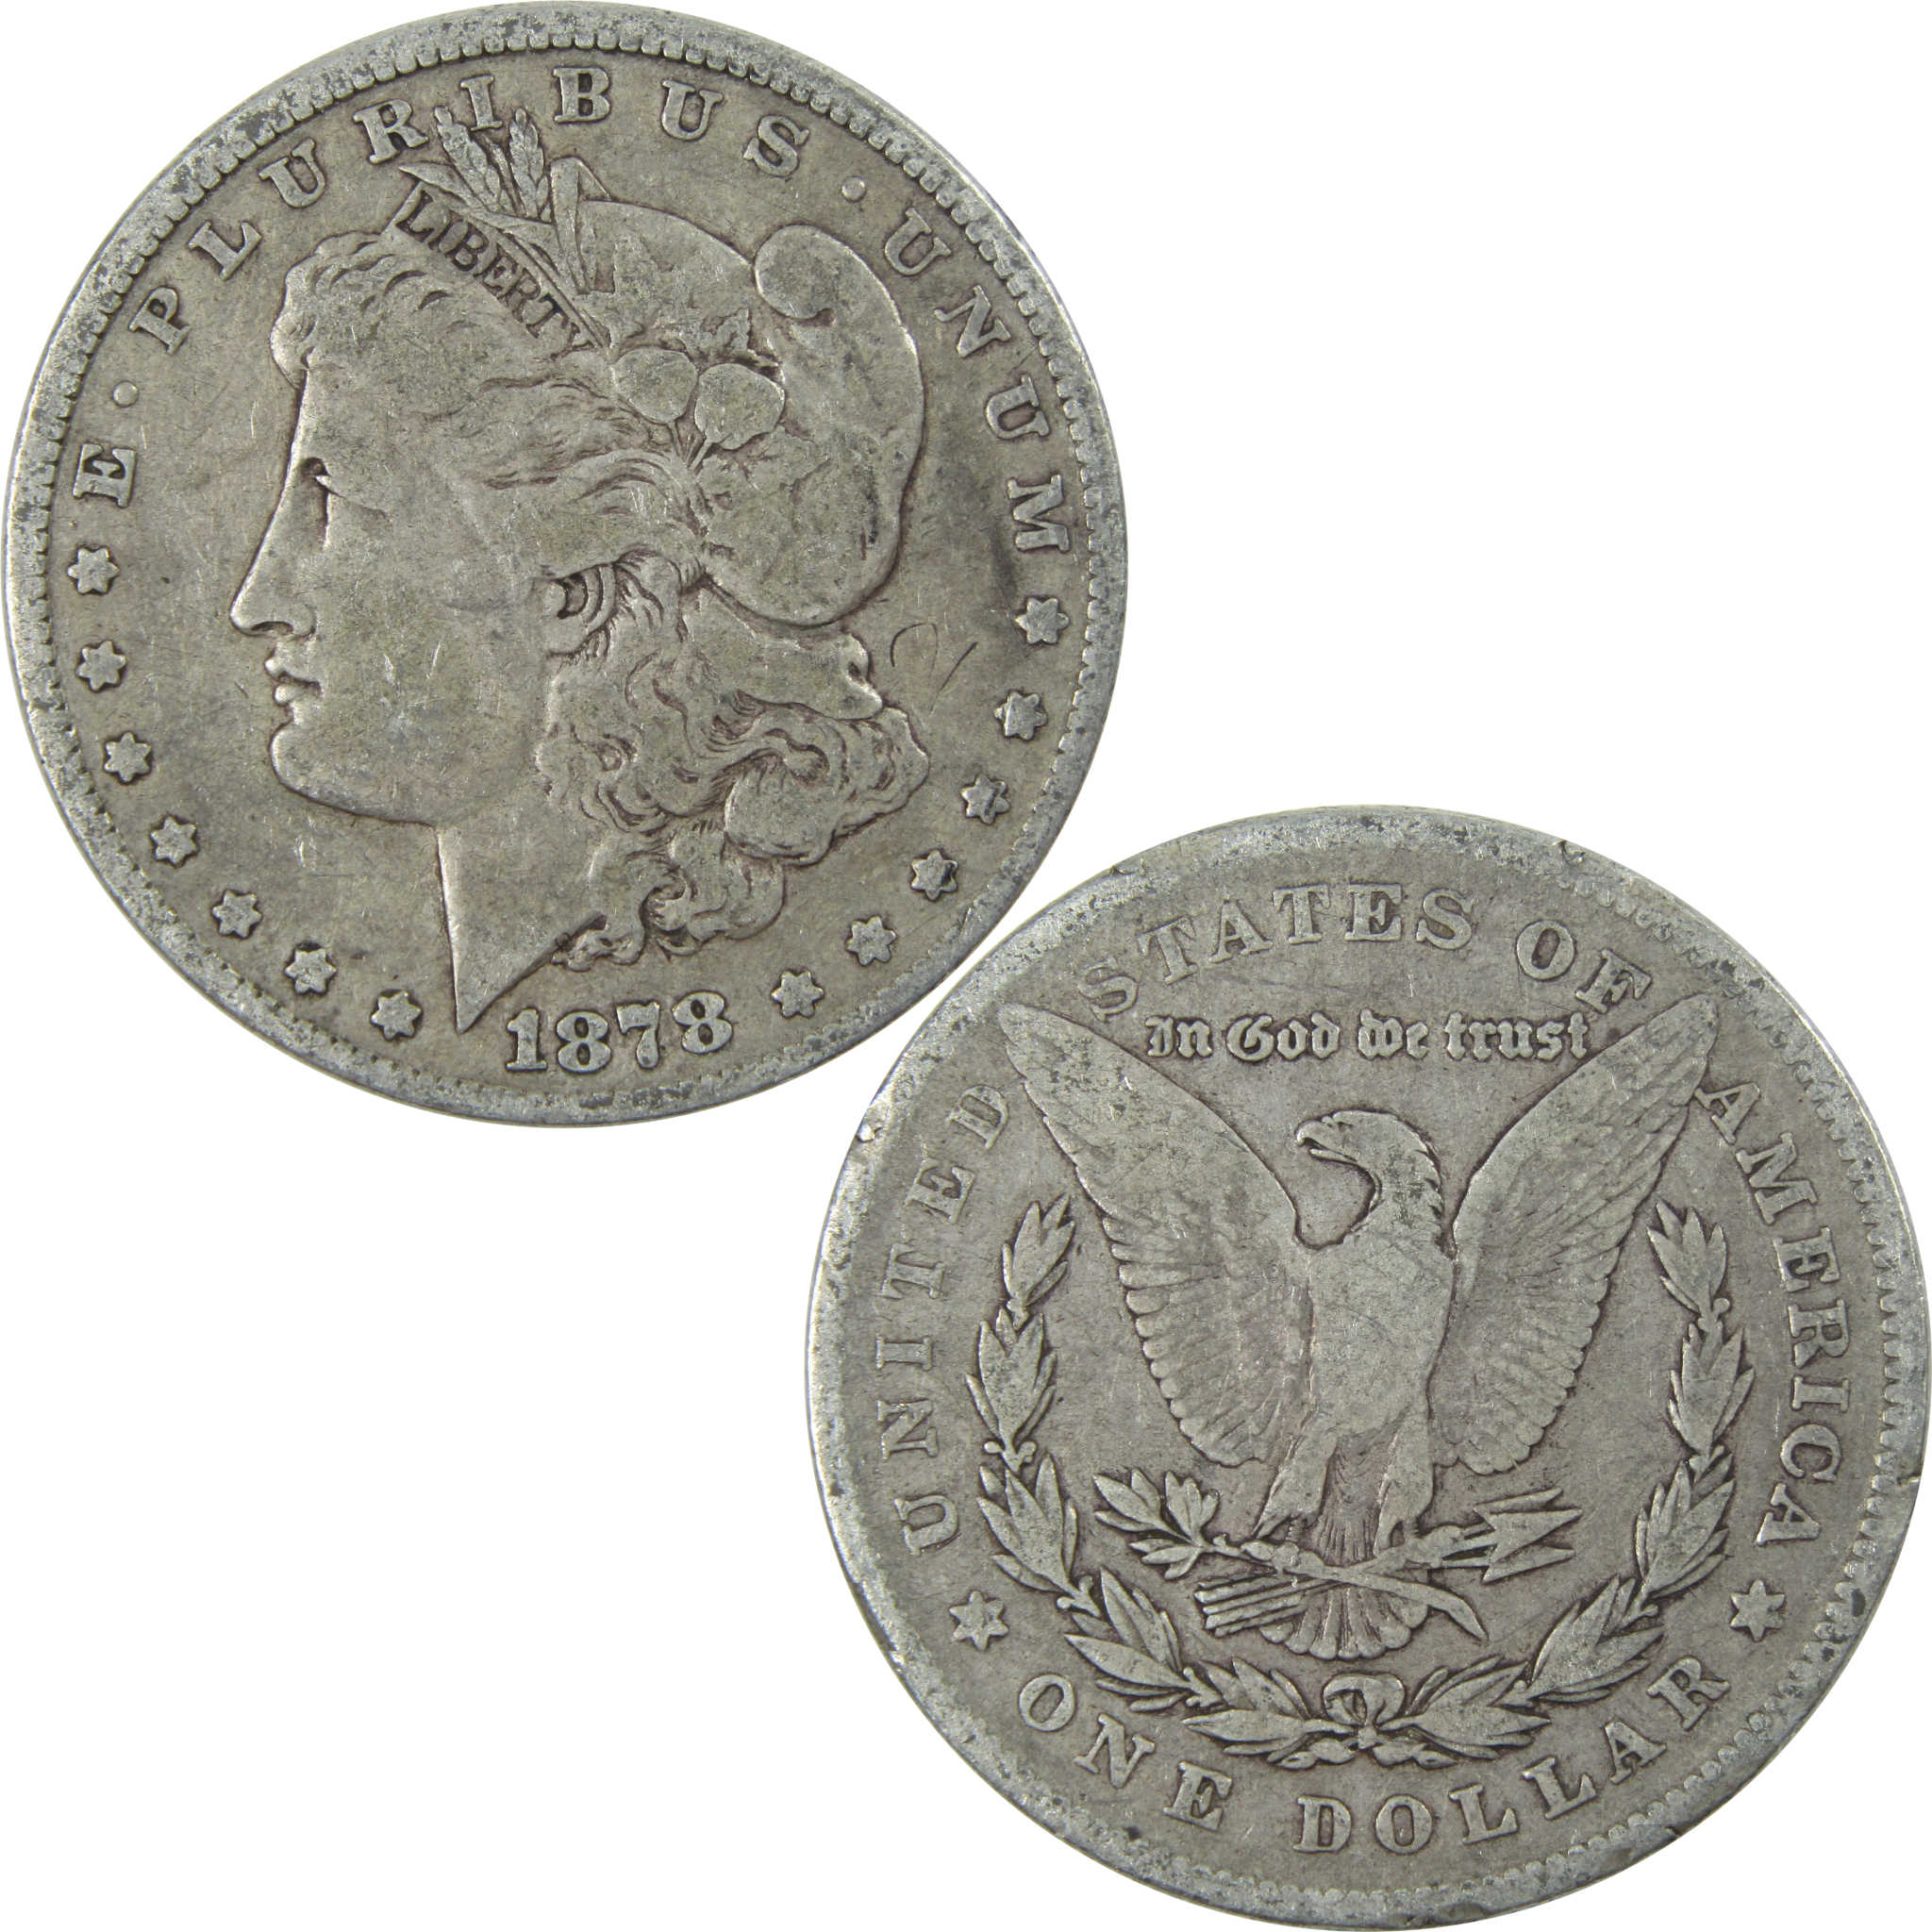 1878 7TF Rev 78 Morgan Dollar VG Very Good Silver $1 Coin SKU:I13916 - Morgan coin - Morgan silver dollar - Morgan silver dollar for sale - Profile Coins &amp; Collectibles